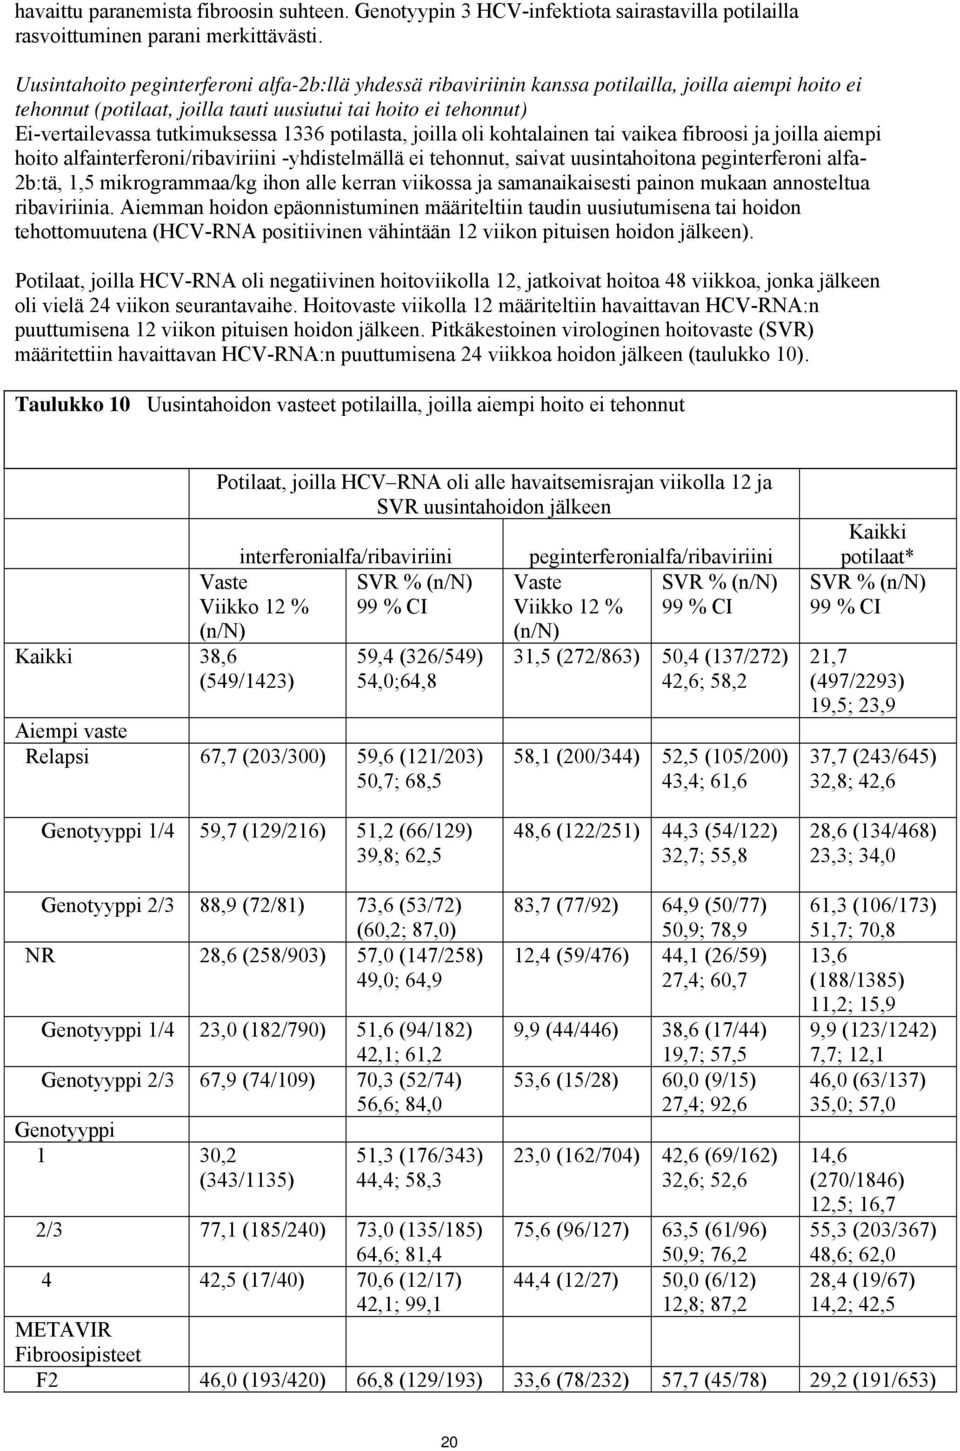 1336 potilasta, joilla oli kohtalainen tai vaikea fibroosi ja joilla aiempi hoito alfainterferoni/ribaviriini -yhdistelmällä ei tehonnut, saivat uusintahoitona peginterferoni alfa- 2b:tä, 1,5